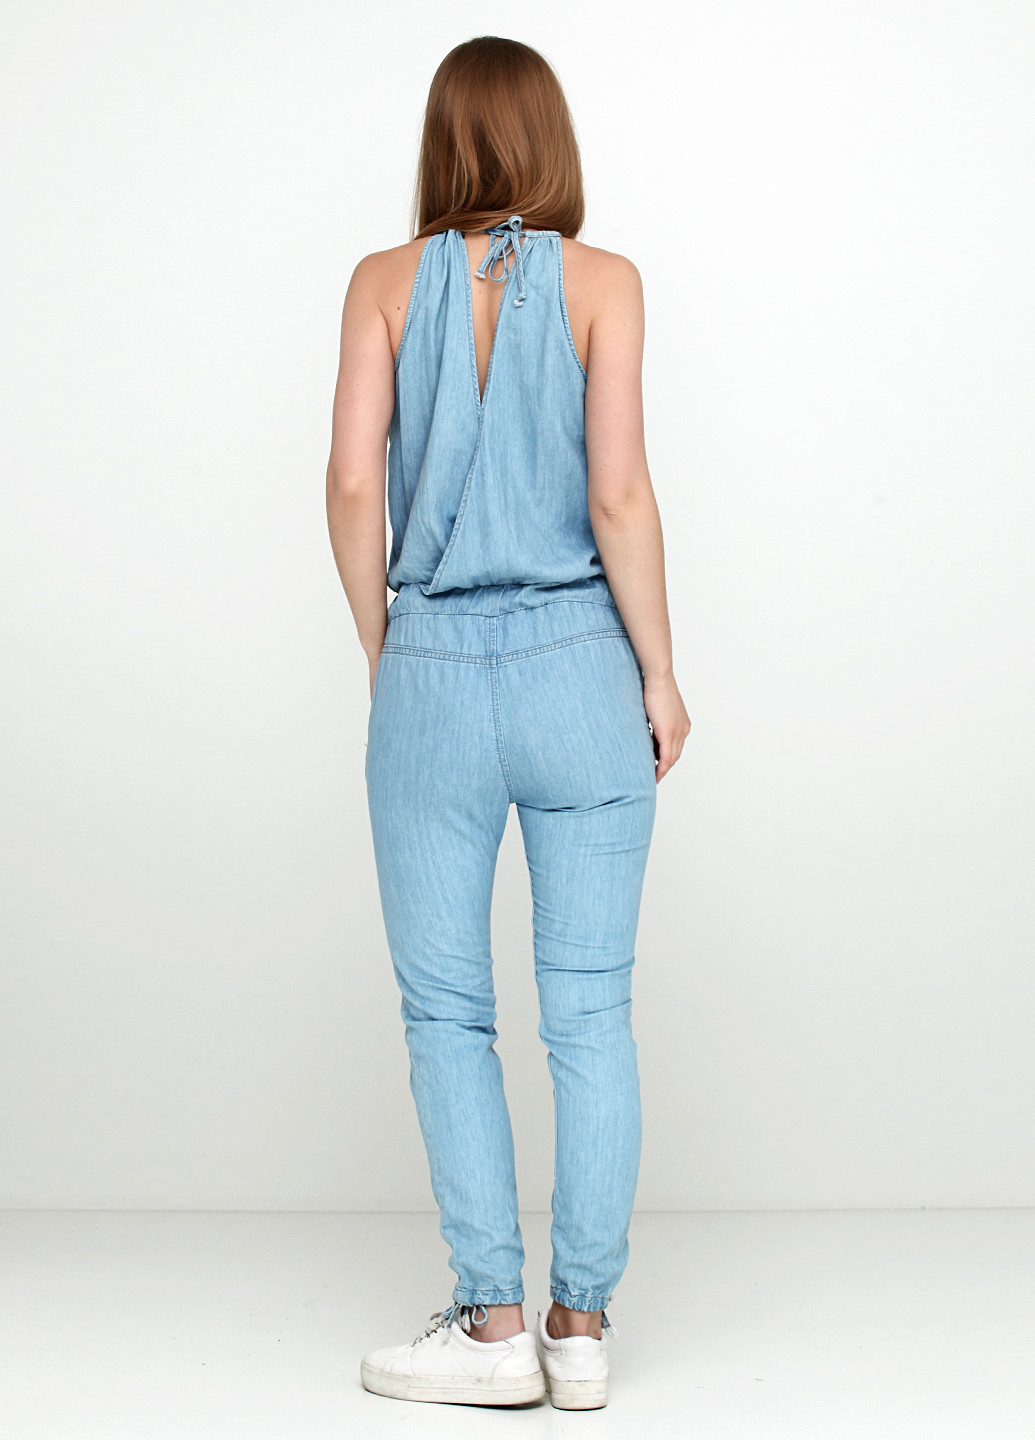 Комбинезон Pepe Jeans комбинезон-брюки однотонный голубой денил